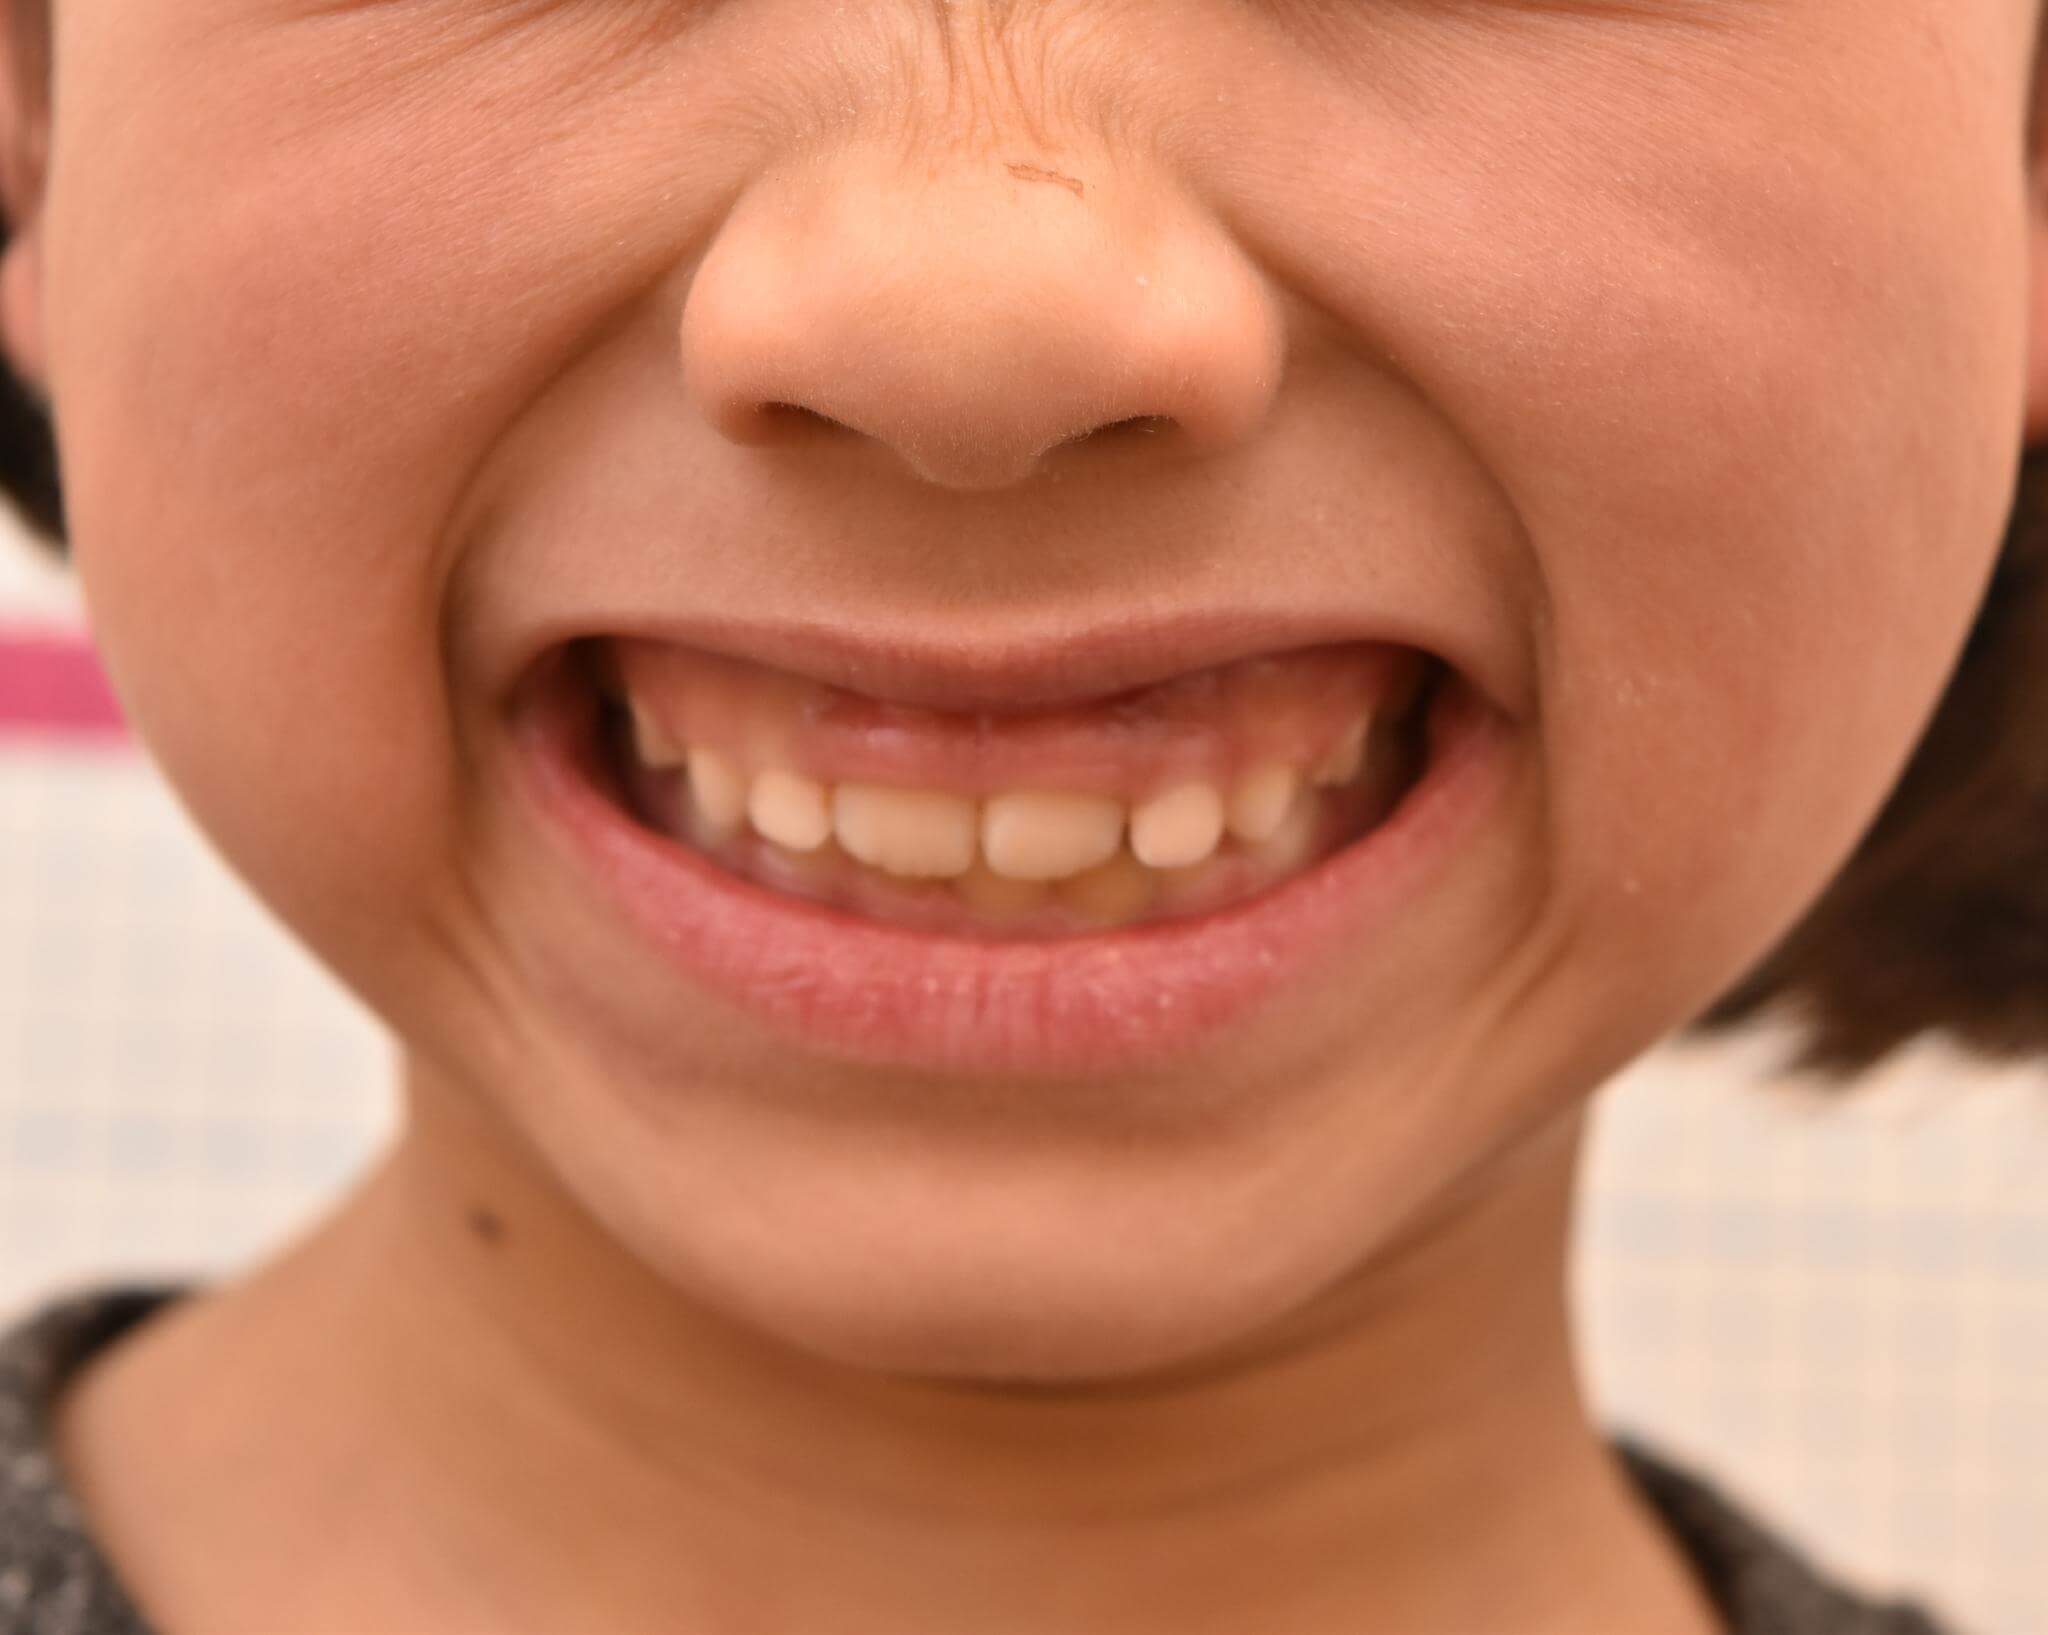 下方成長により笑った際歯茎が多く見える。